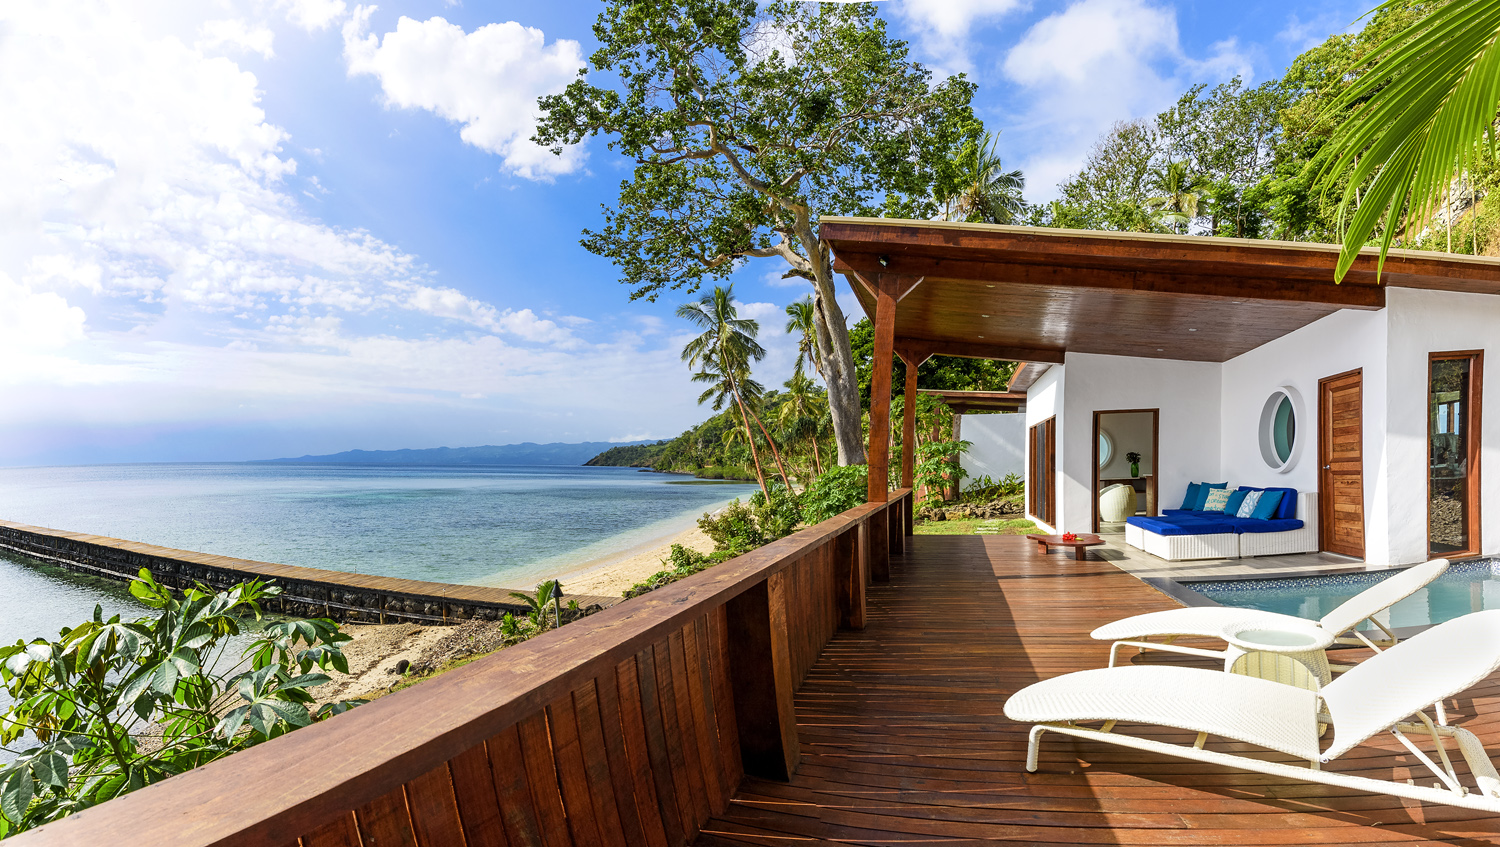 Oceanfront Retreat Ocean Views, The Remote Resort Fiji Islands